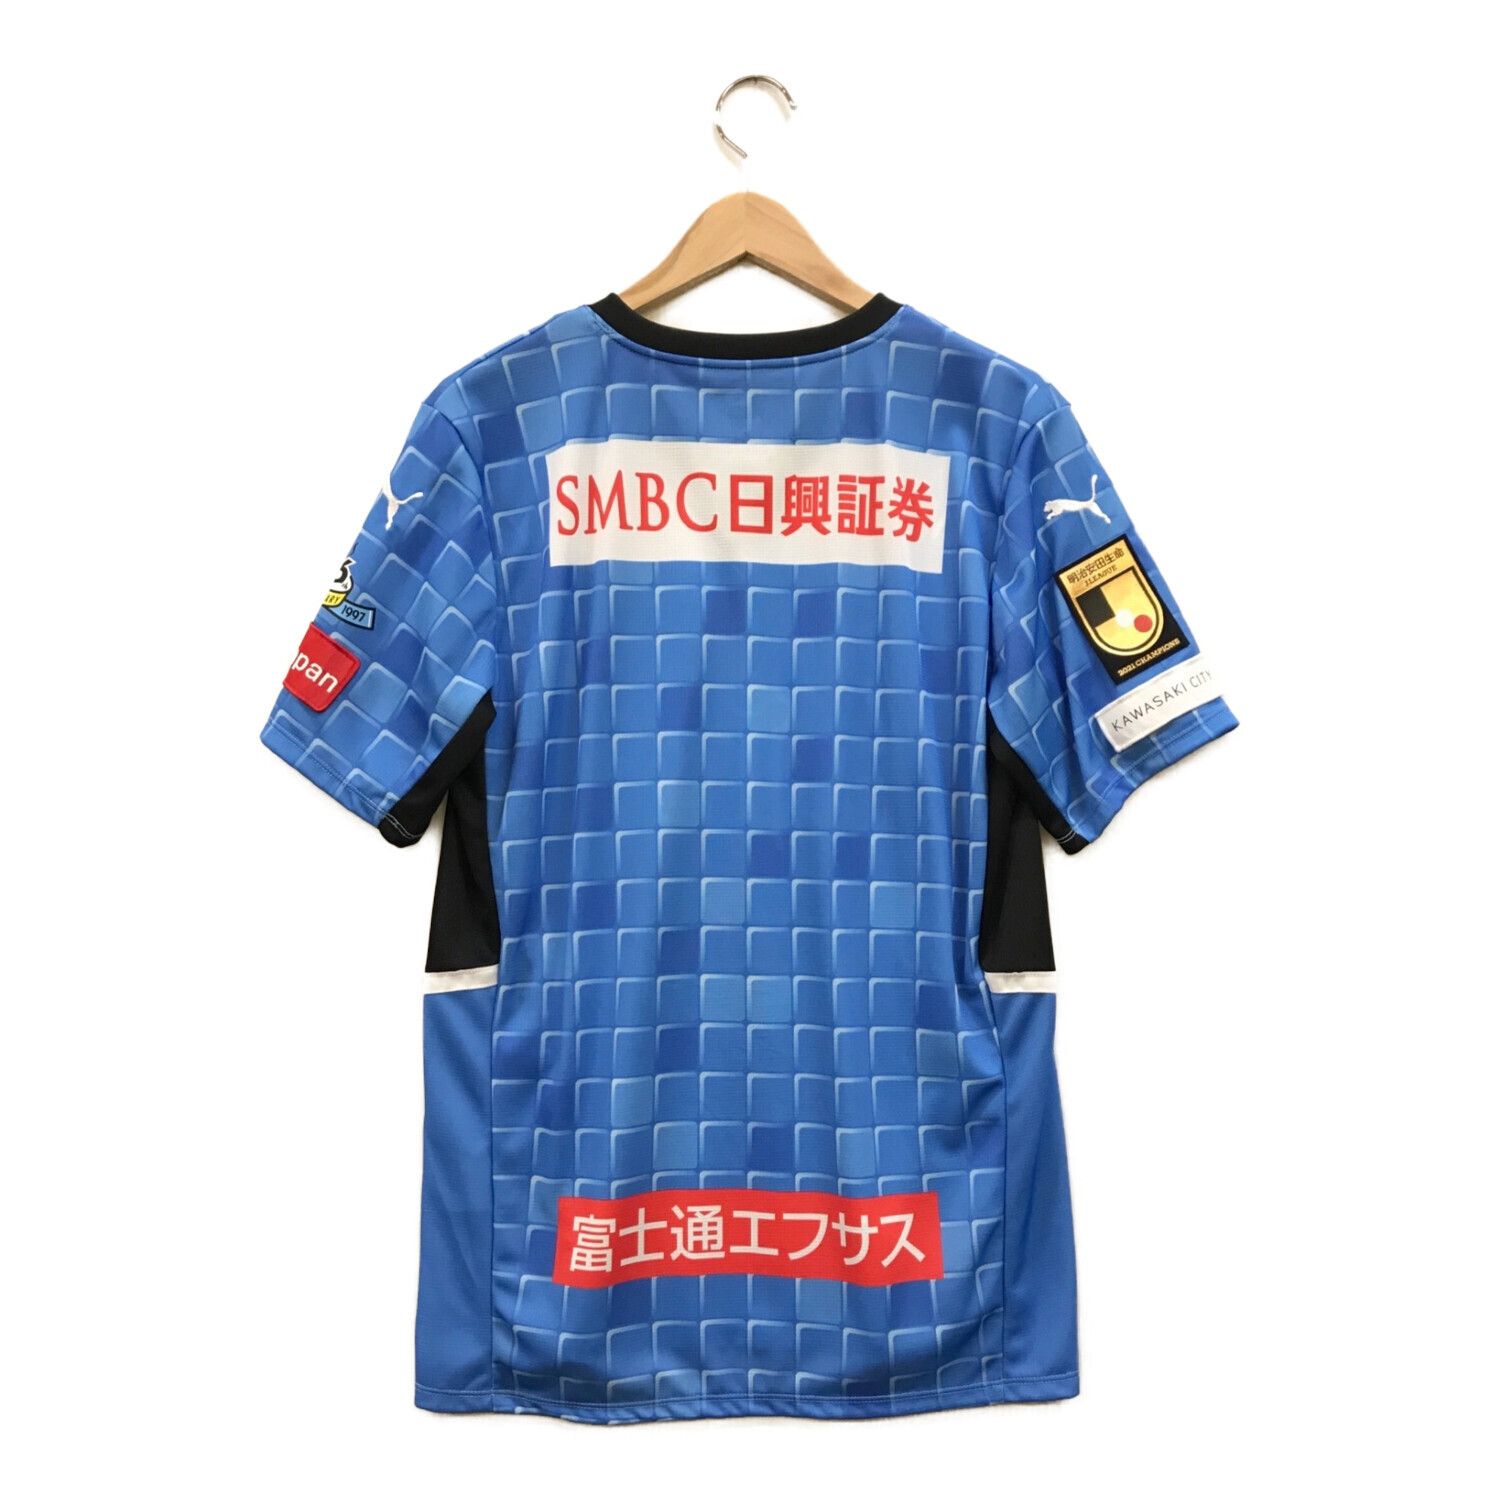 PUMA (プーマ) ゲームシャツ メンズ SIZE L ブルー + 川崎フロンターレ 